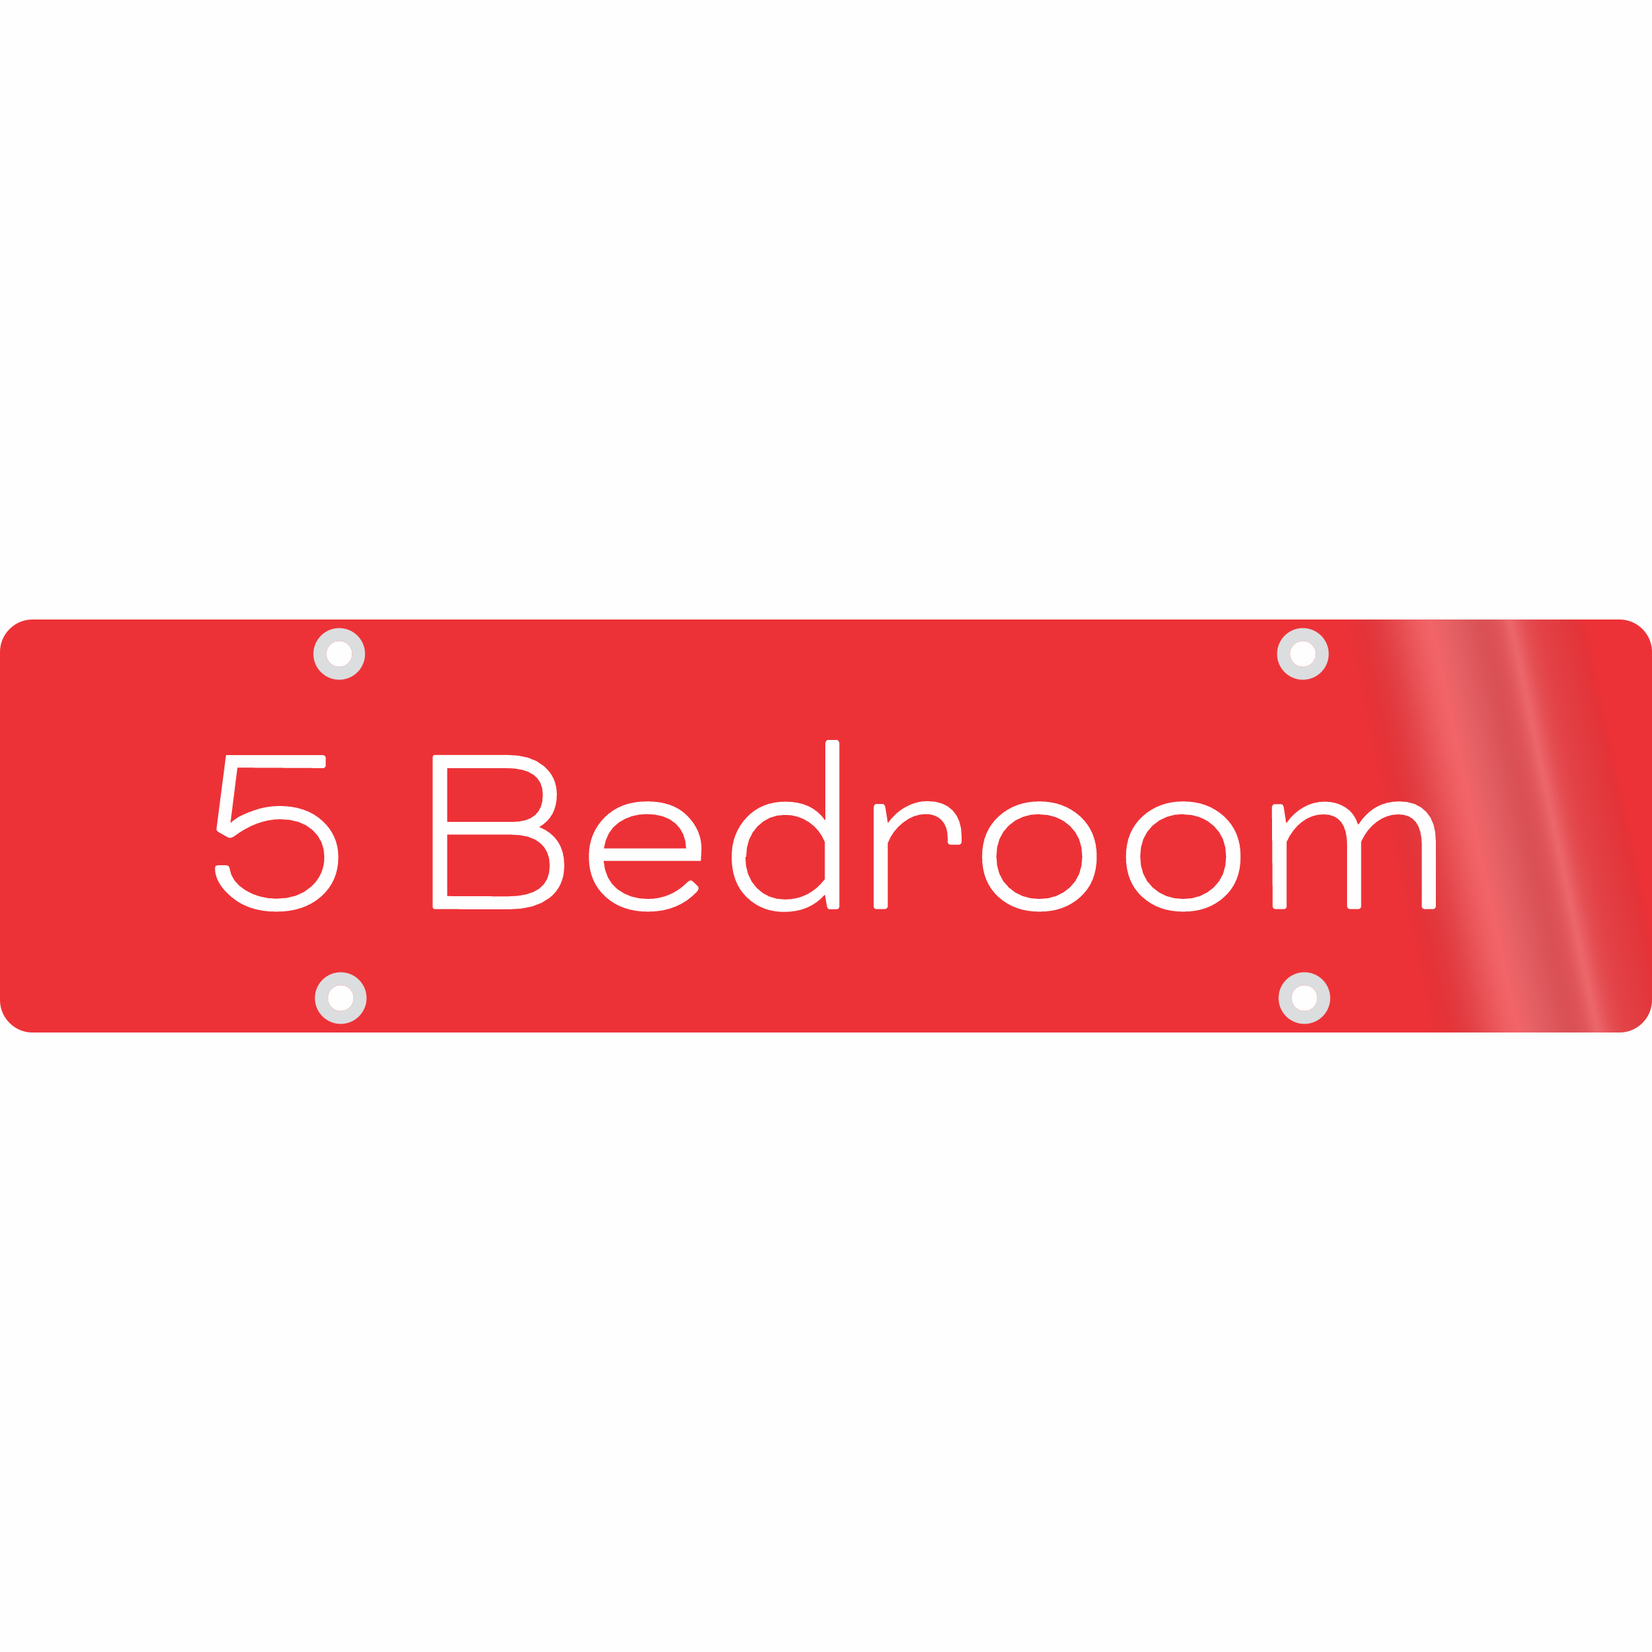 24" x 6" - 5 Bedroom